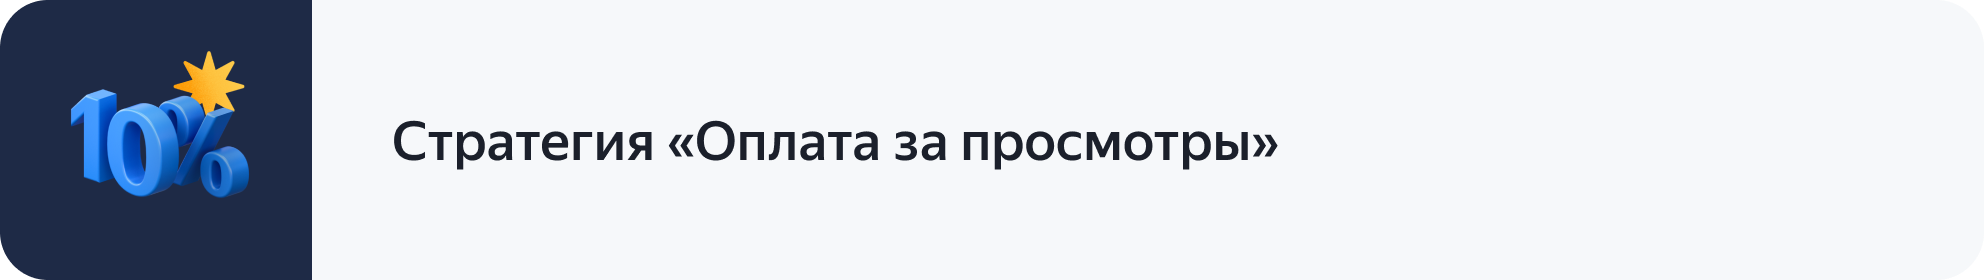 В новый год с новыми бонусными акциями — Новости рекламных технологий Яндекса1